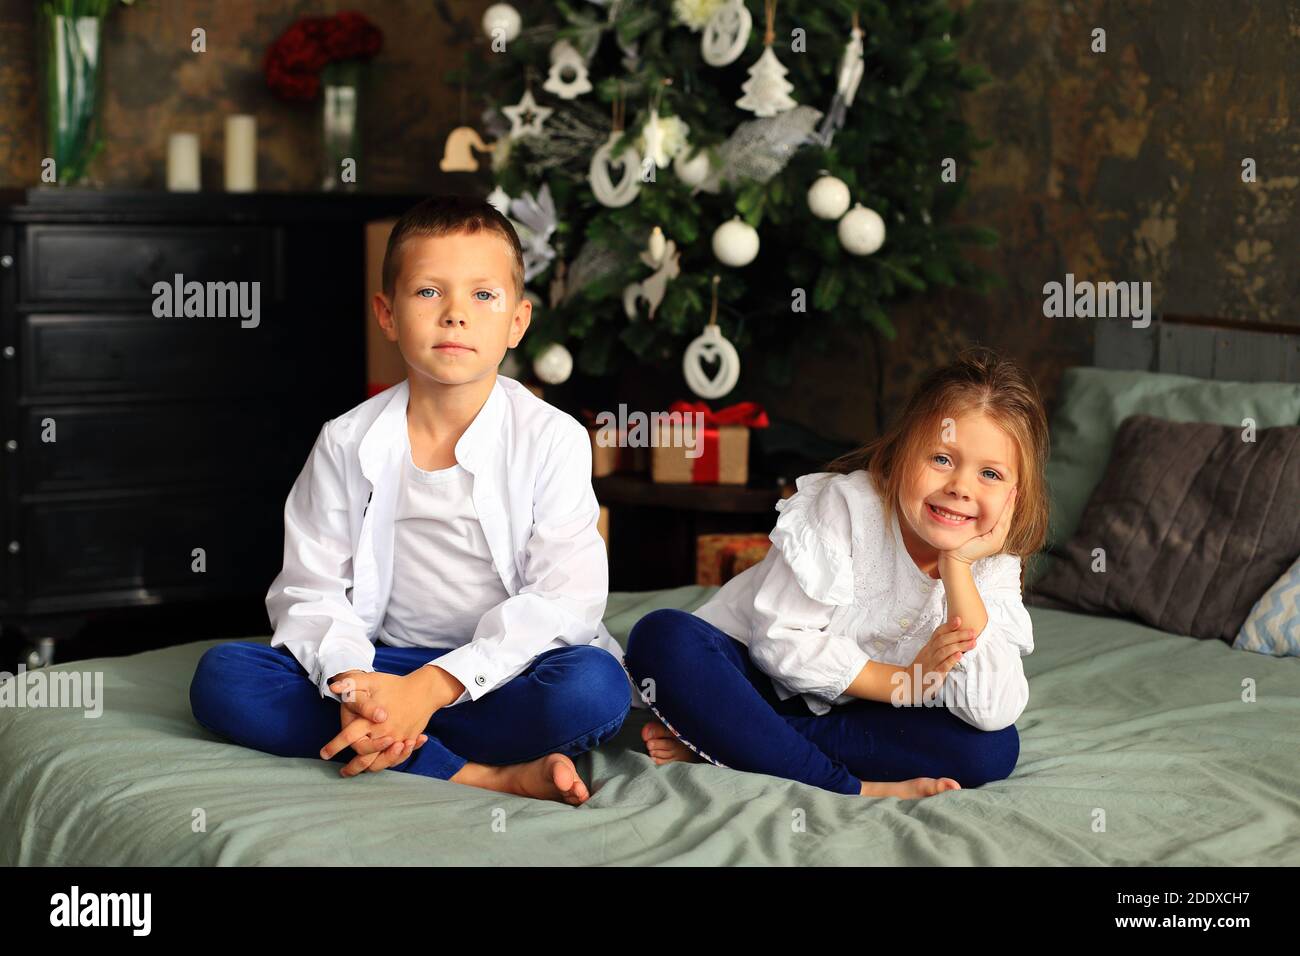 Les enfants sont assis sur le lit devant l'arbre de Noël. Garçon et fille attendant noël Banque D'Images